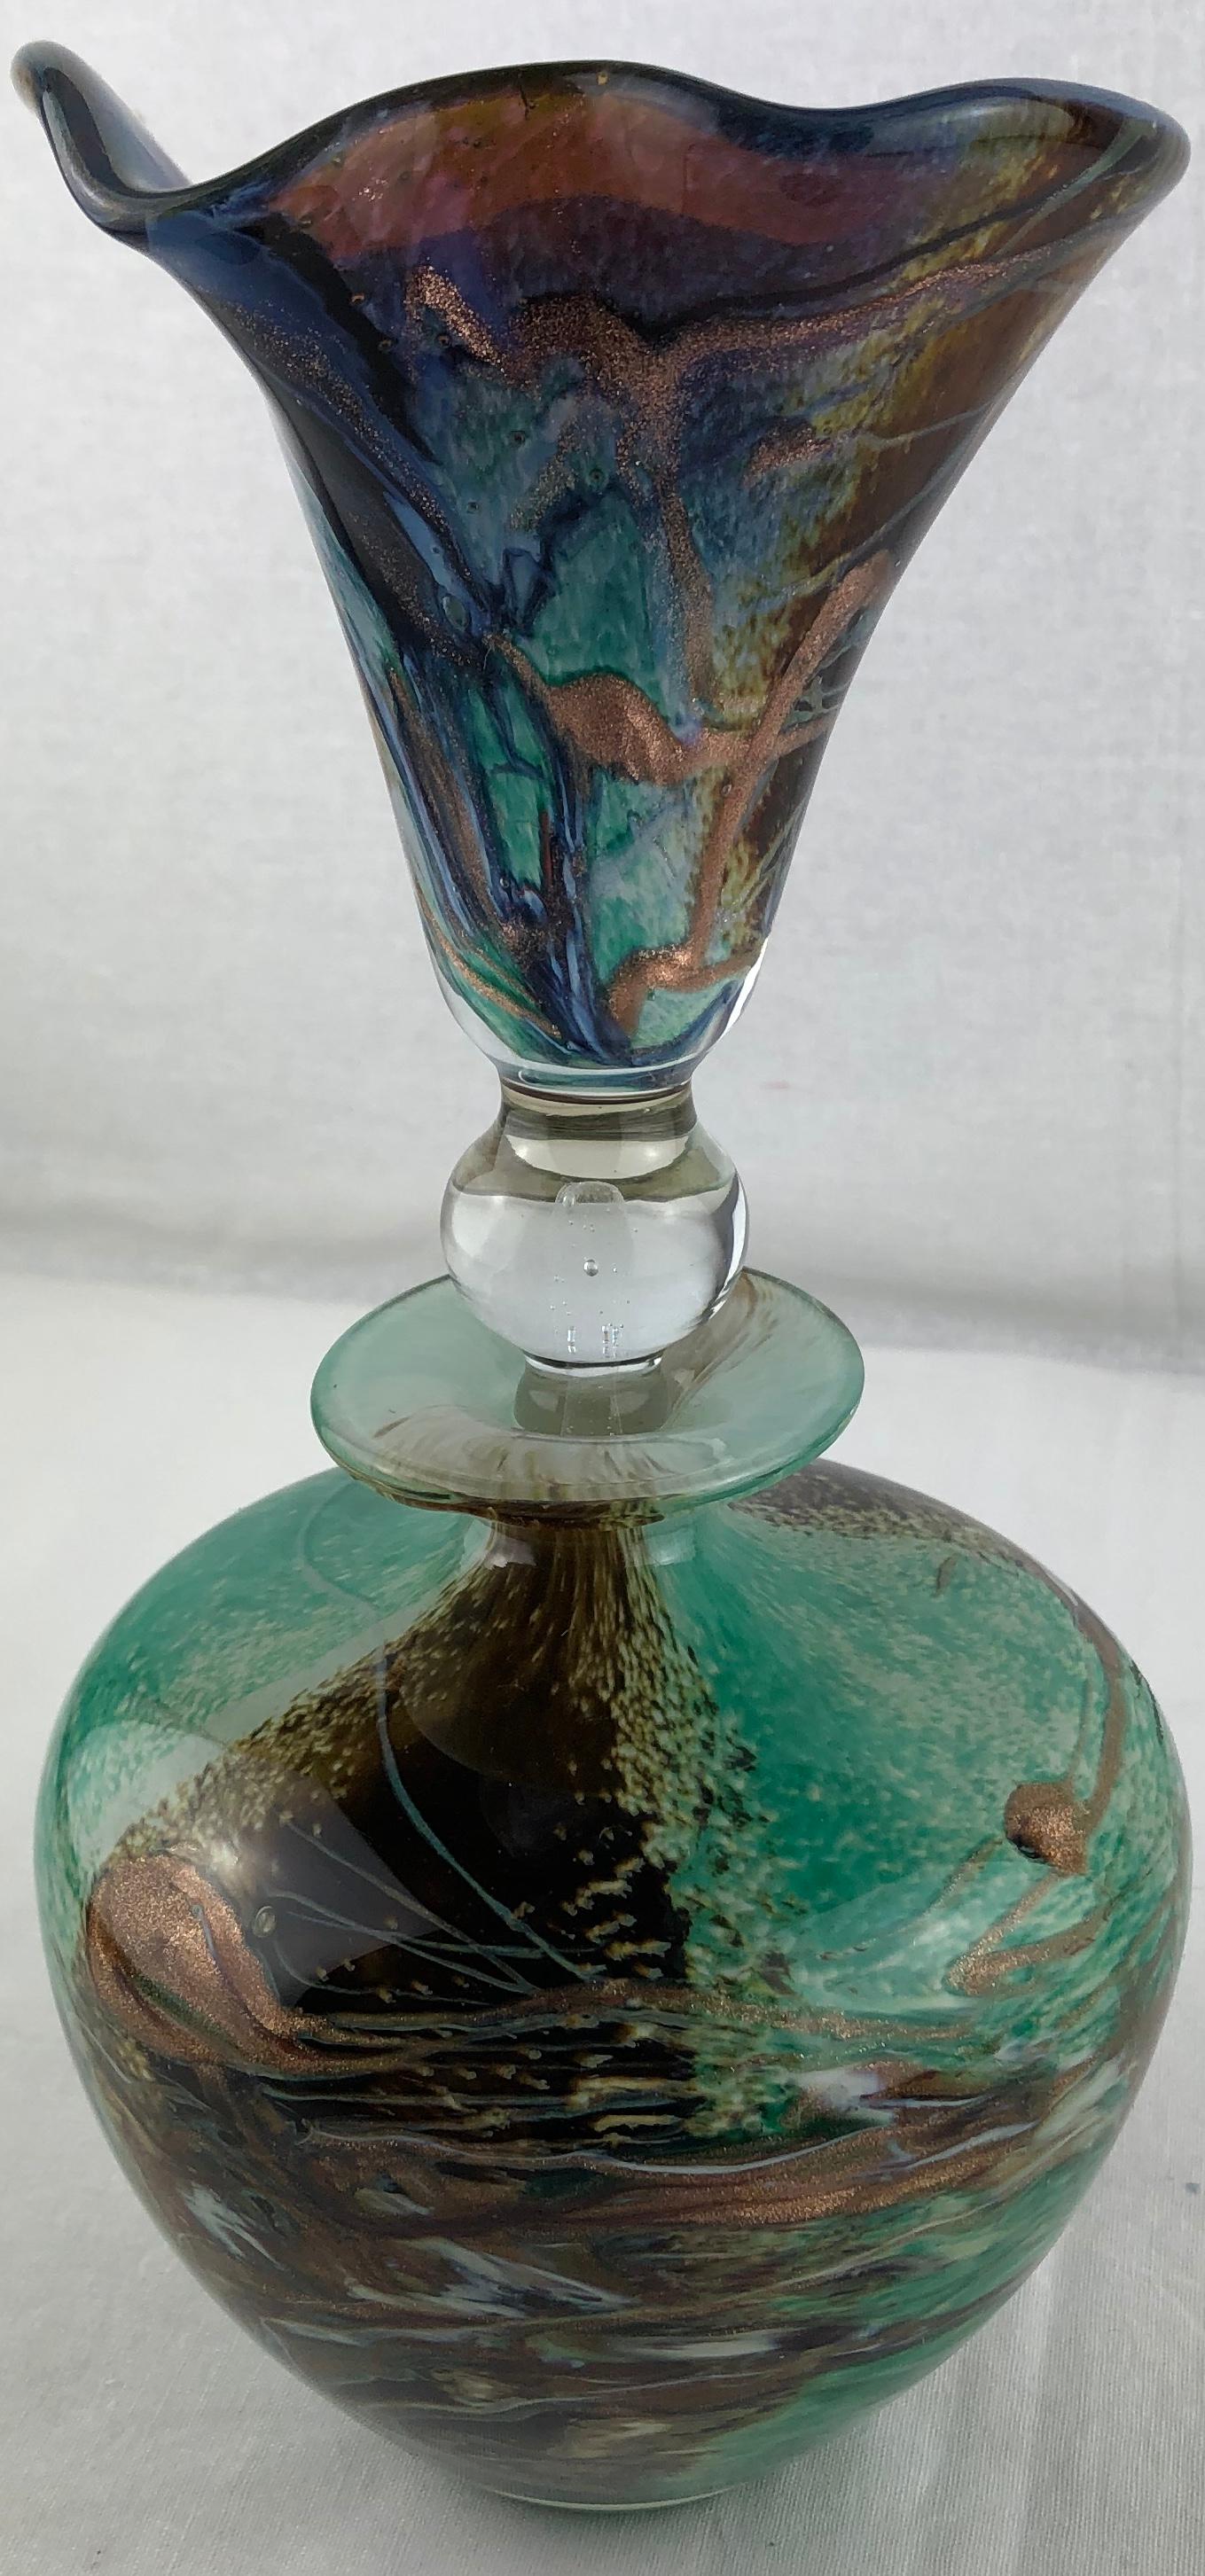 Un rare et unique flacon de parfum en verre d'art fait à la main par Michele Luzoro, connu comme la 